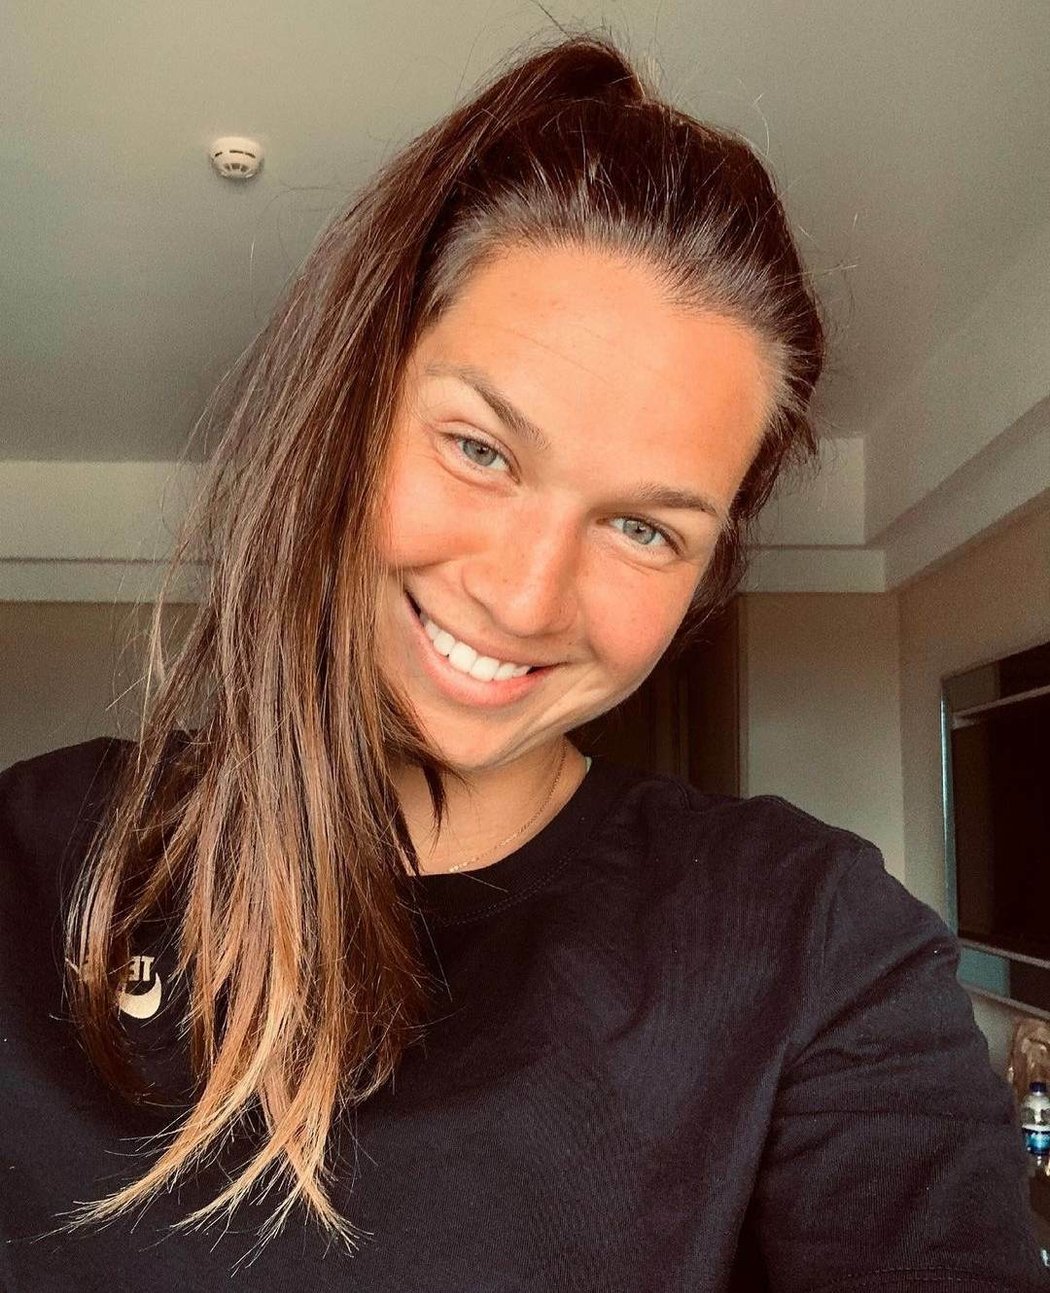 Tenistka Miriam Kolodziejová se po postupu své parťačky Vondroušové neubránila slzám štěstí